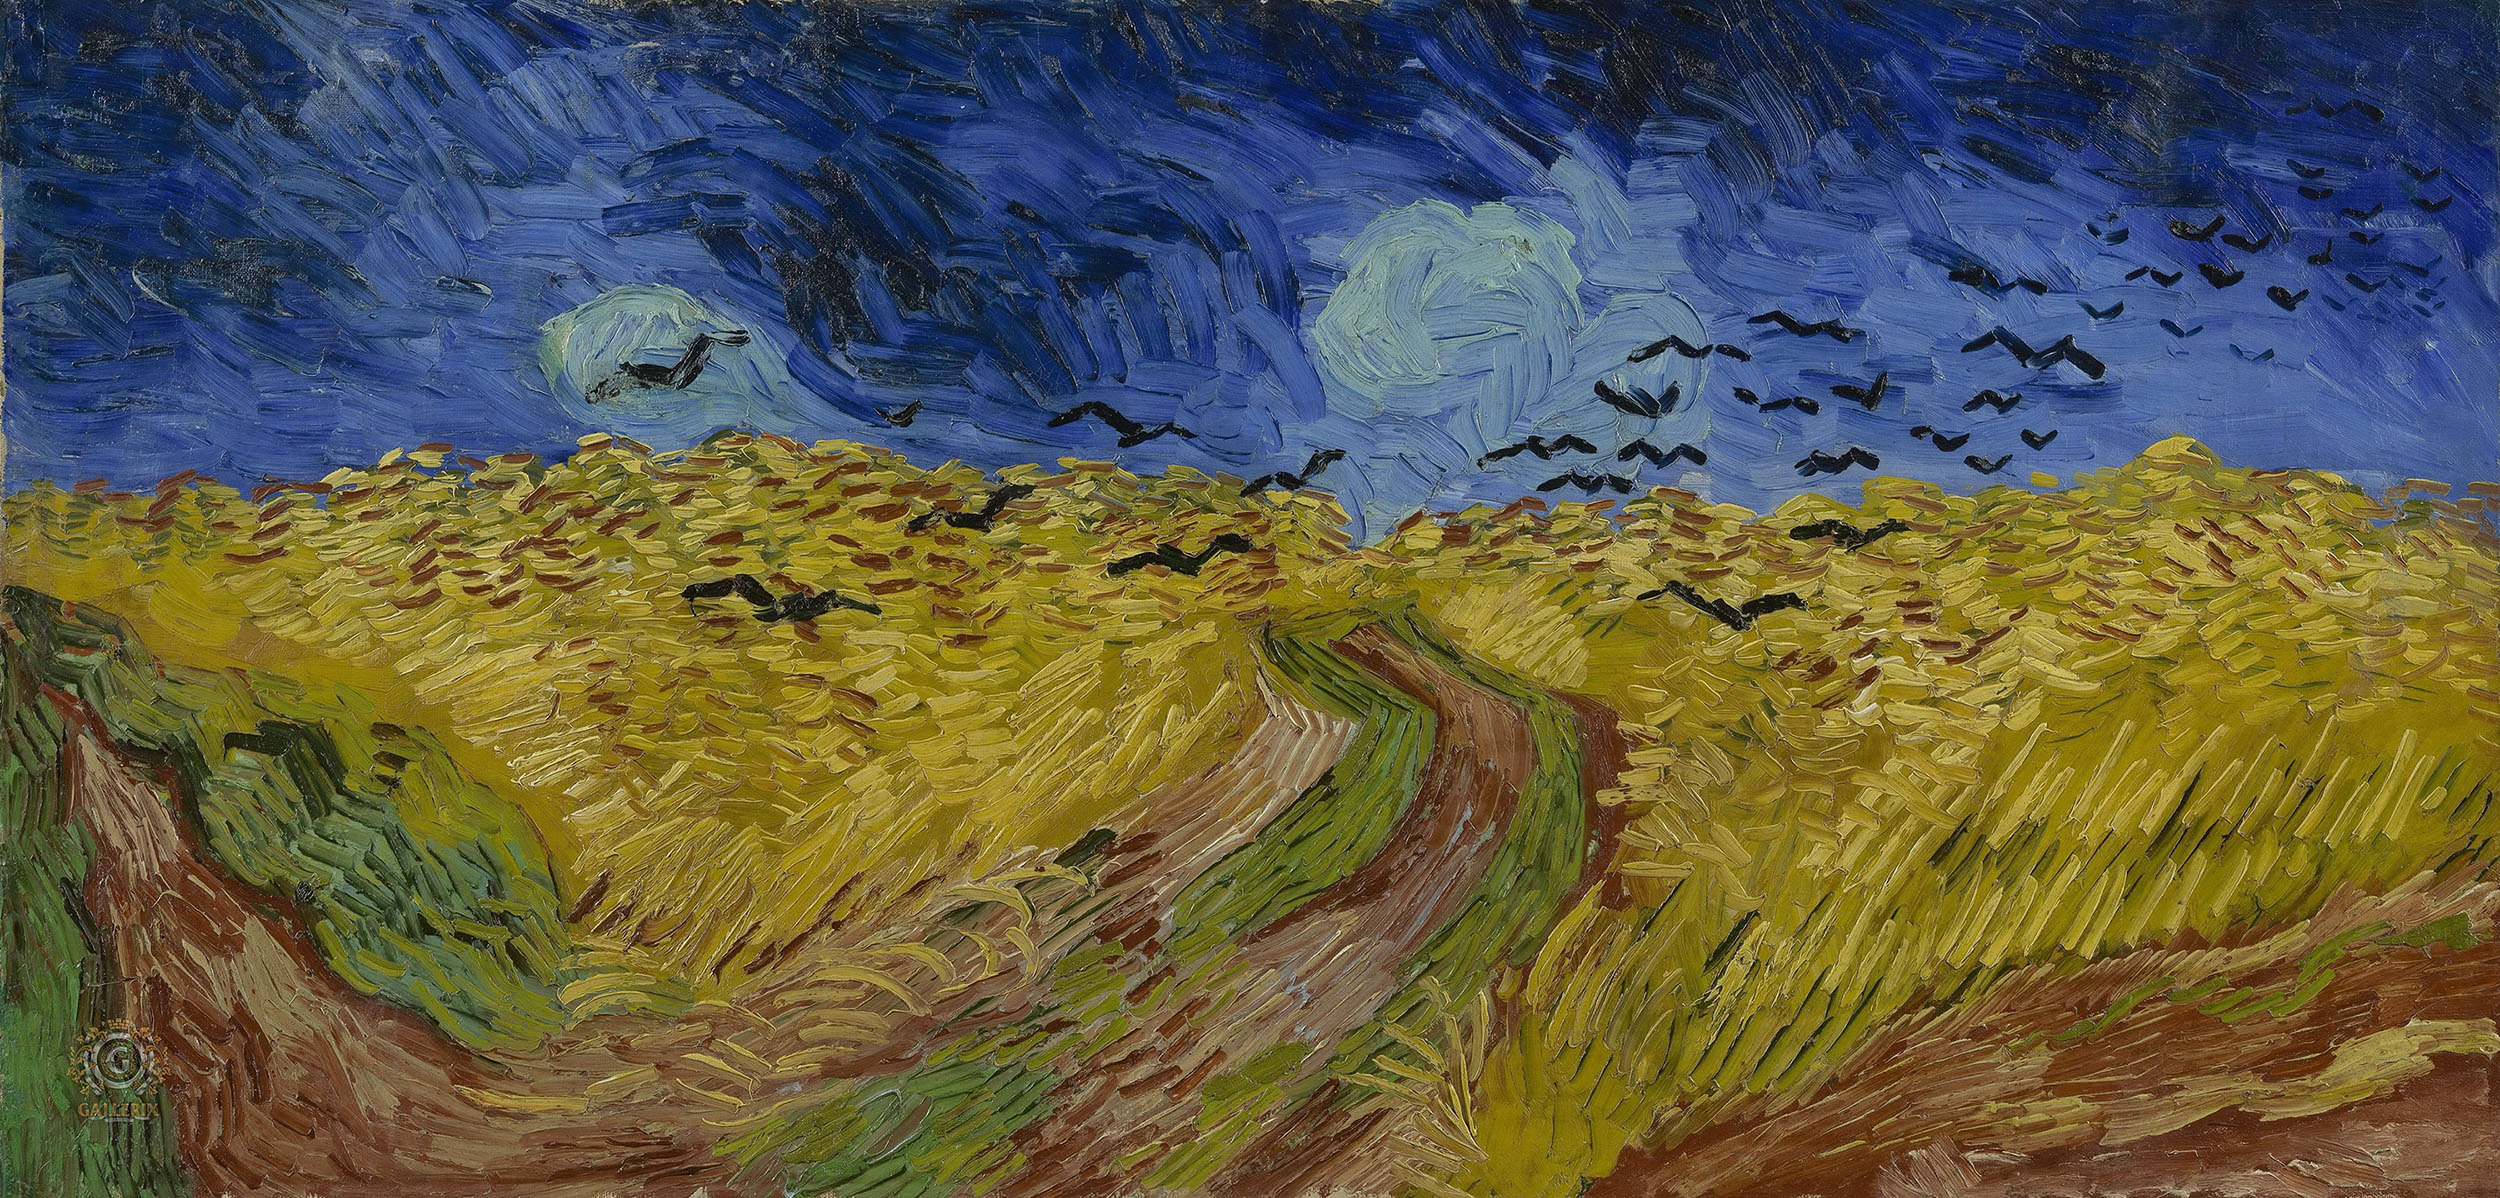 Винсент Ван Гог. "Пшеничное поле под грозовым небом". 1890.